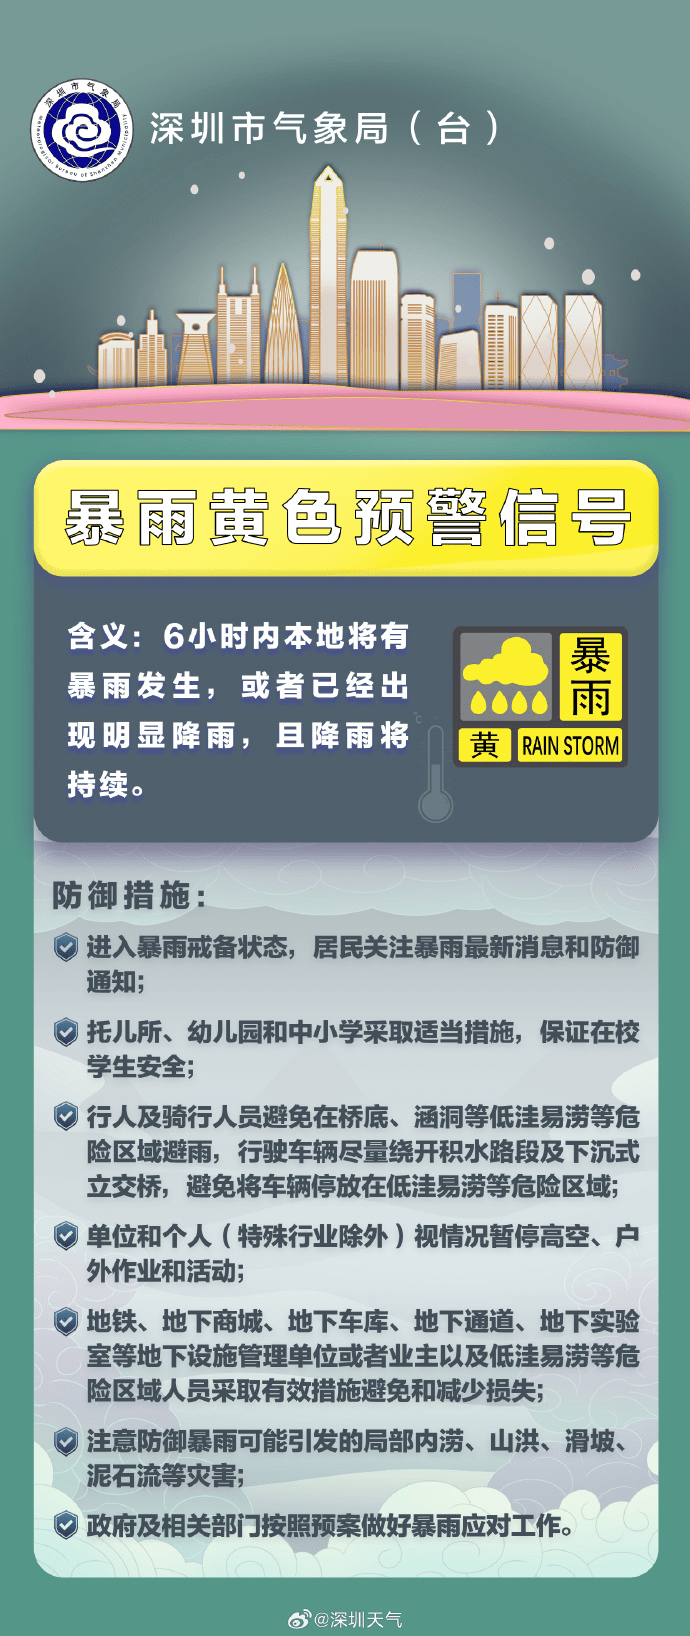 深圳市暴雨黄色预警信号扩展至全市。 深圳天气